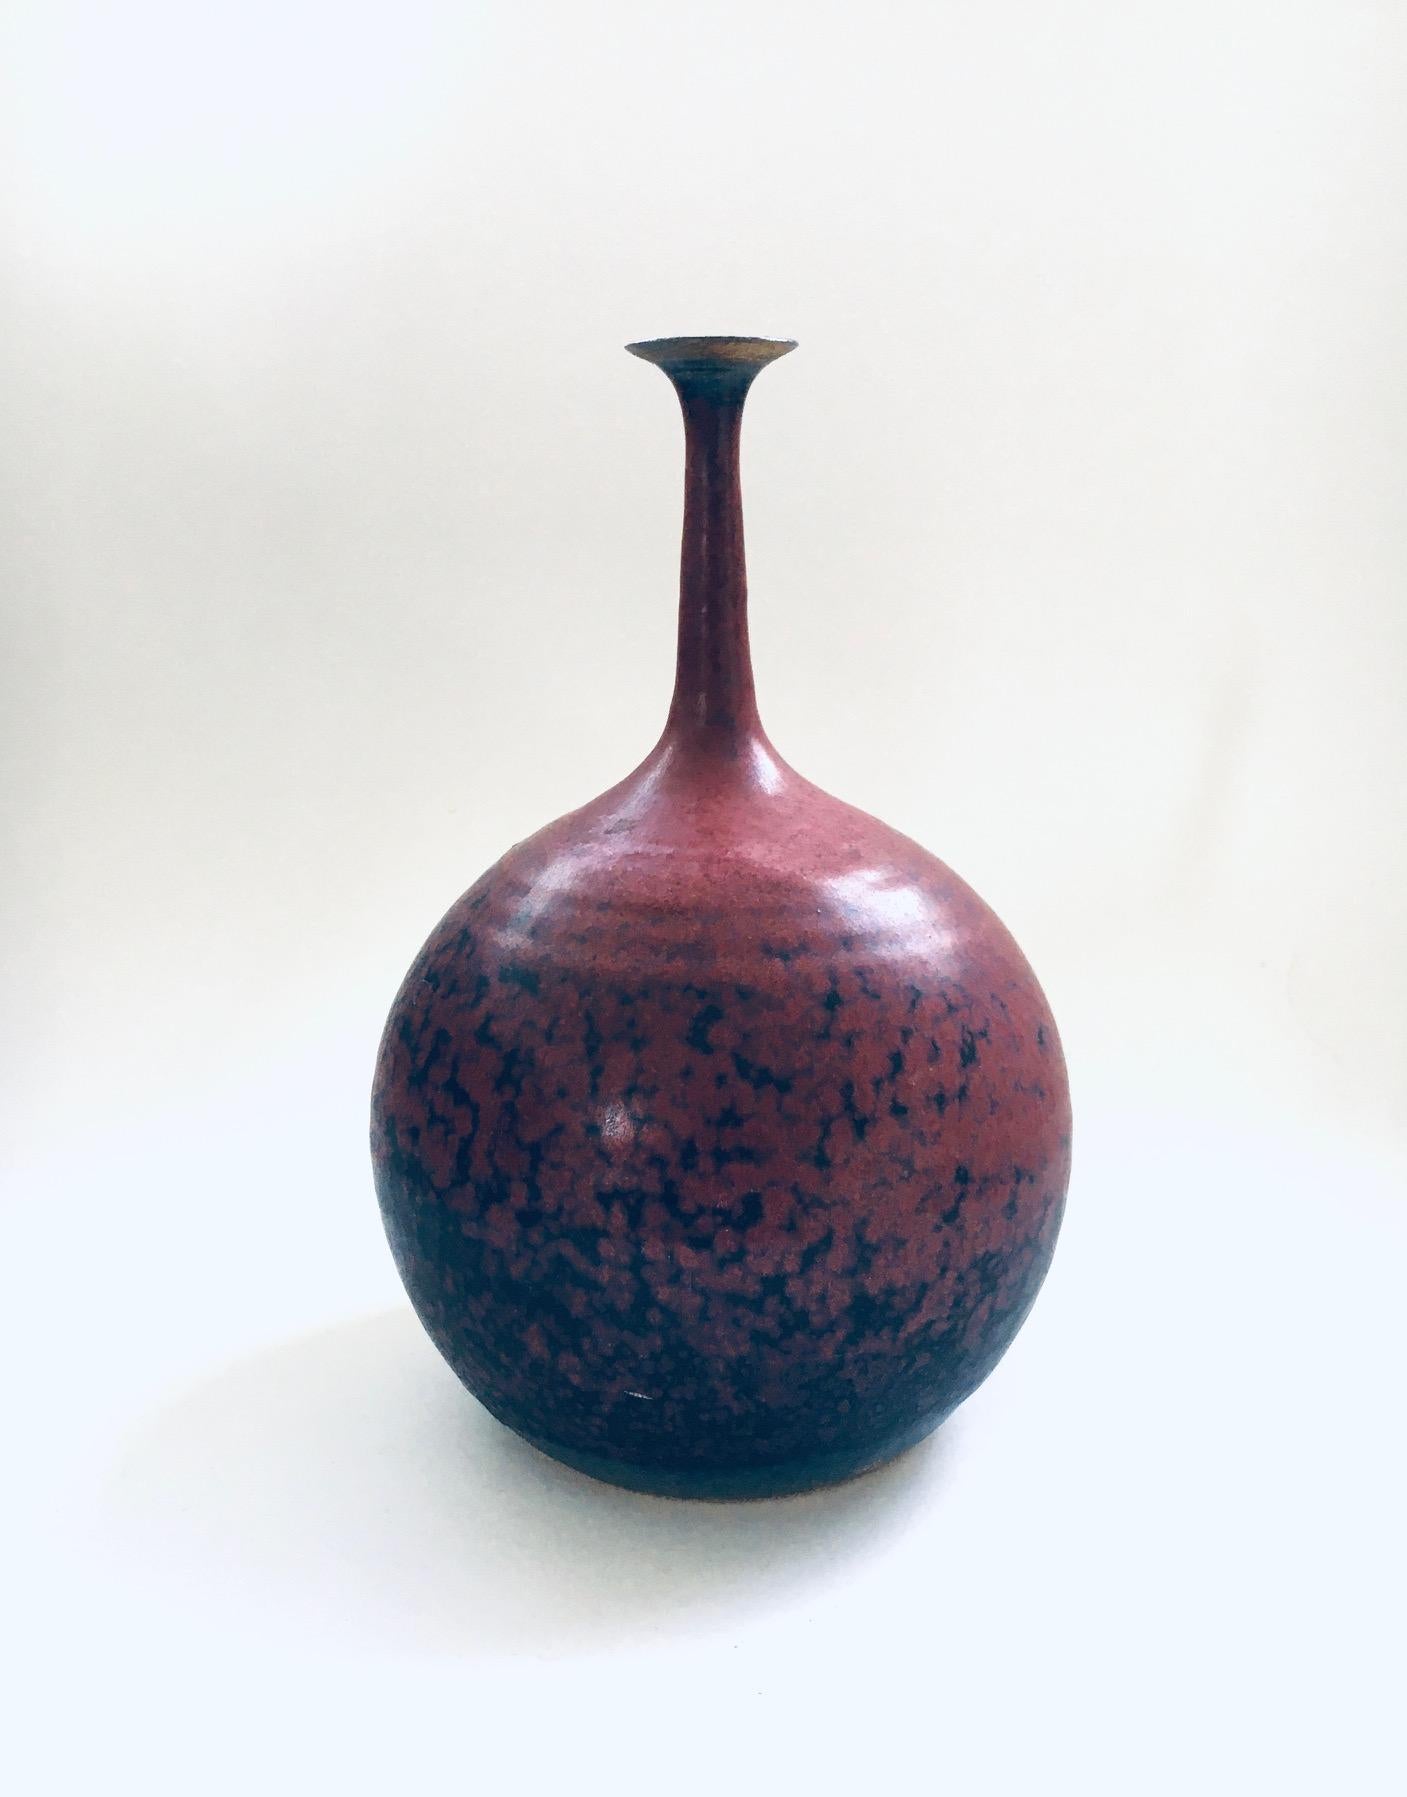 Vintage Art of Vintage Studio Spout Vase by Gubbels Helden. Fabriqué aux Pays-Bas, dans les années 1970/80. Vase en forme de boule avec un bec fin en glaçure rouge bordeaux et bleue. Estampillé sur le fond. Ce produit est en très bon état.